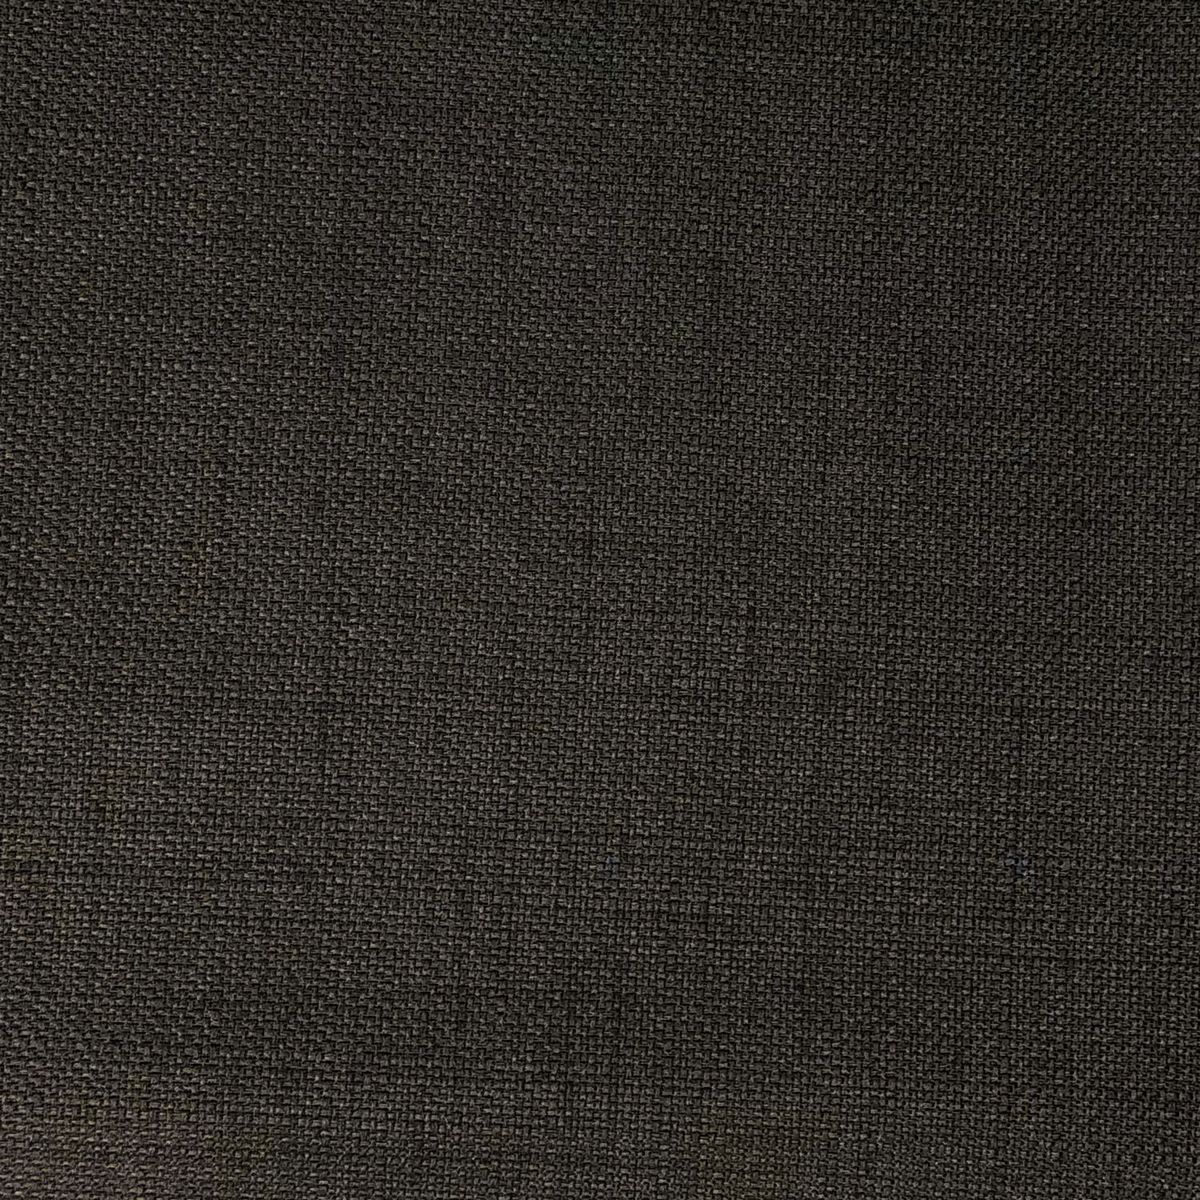 Linoso Black Fabric by Chatham Glyn